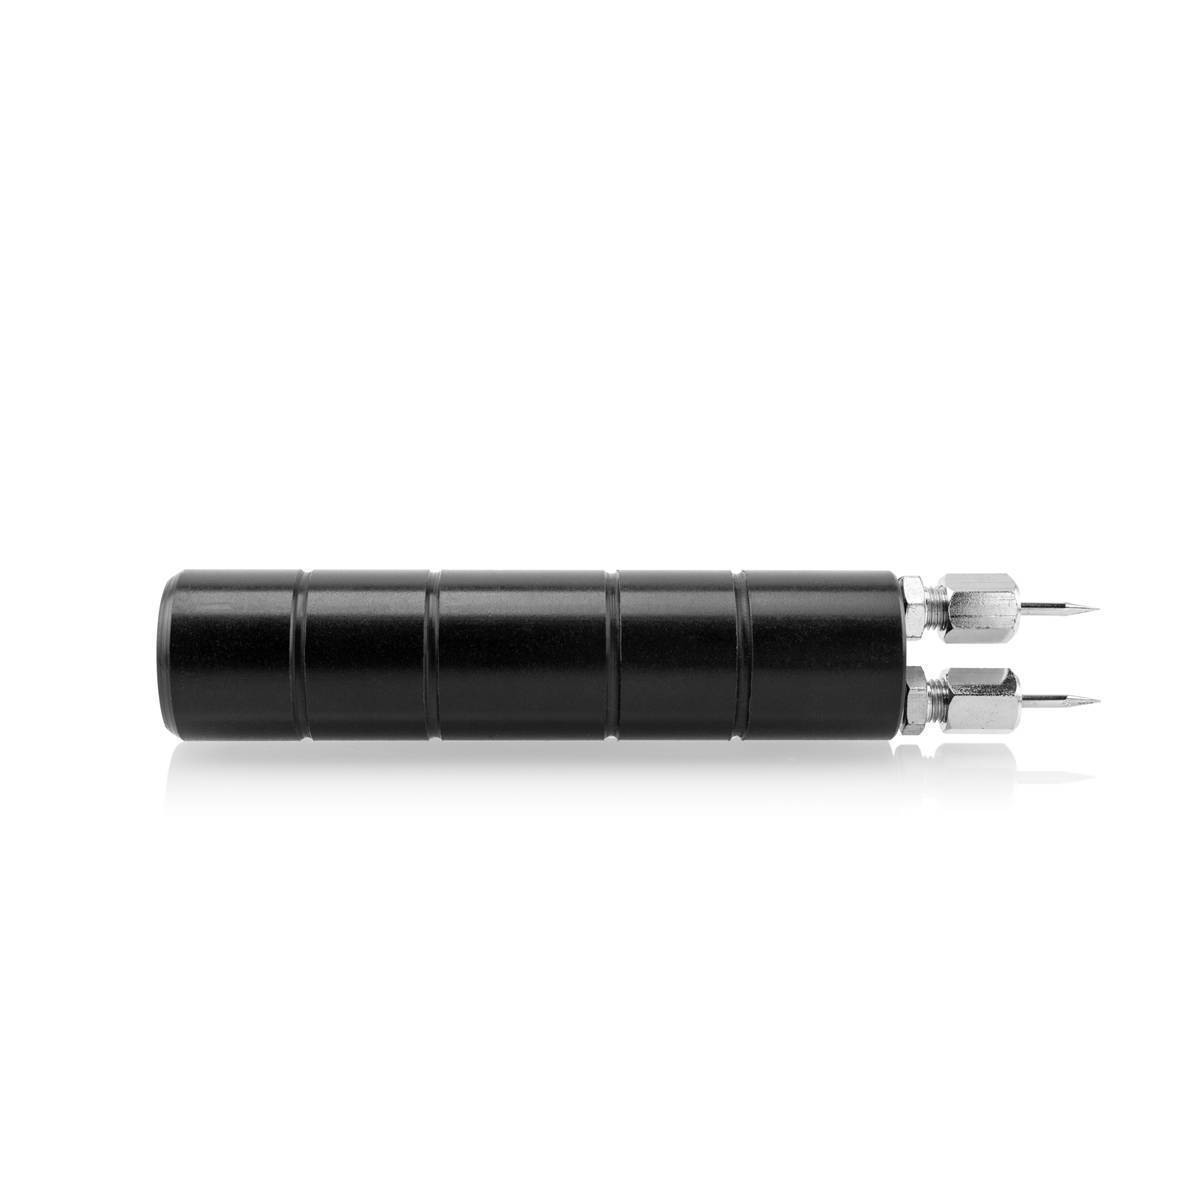 Mini pince à clamper - Longueur totale: 90mm. - Multirex